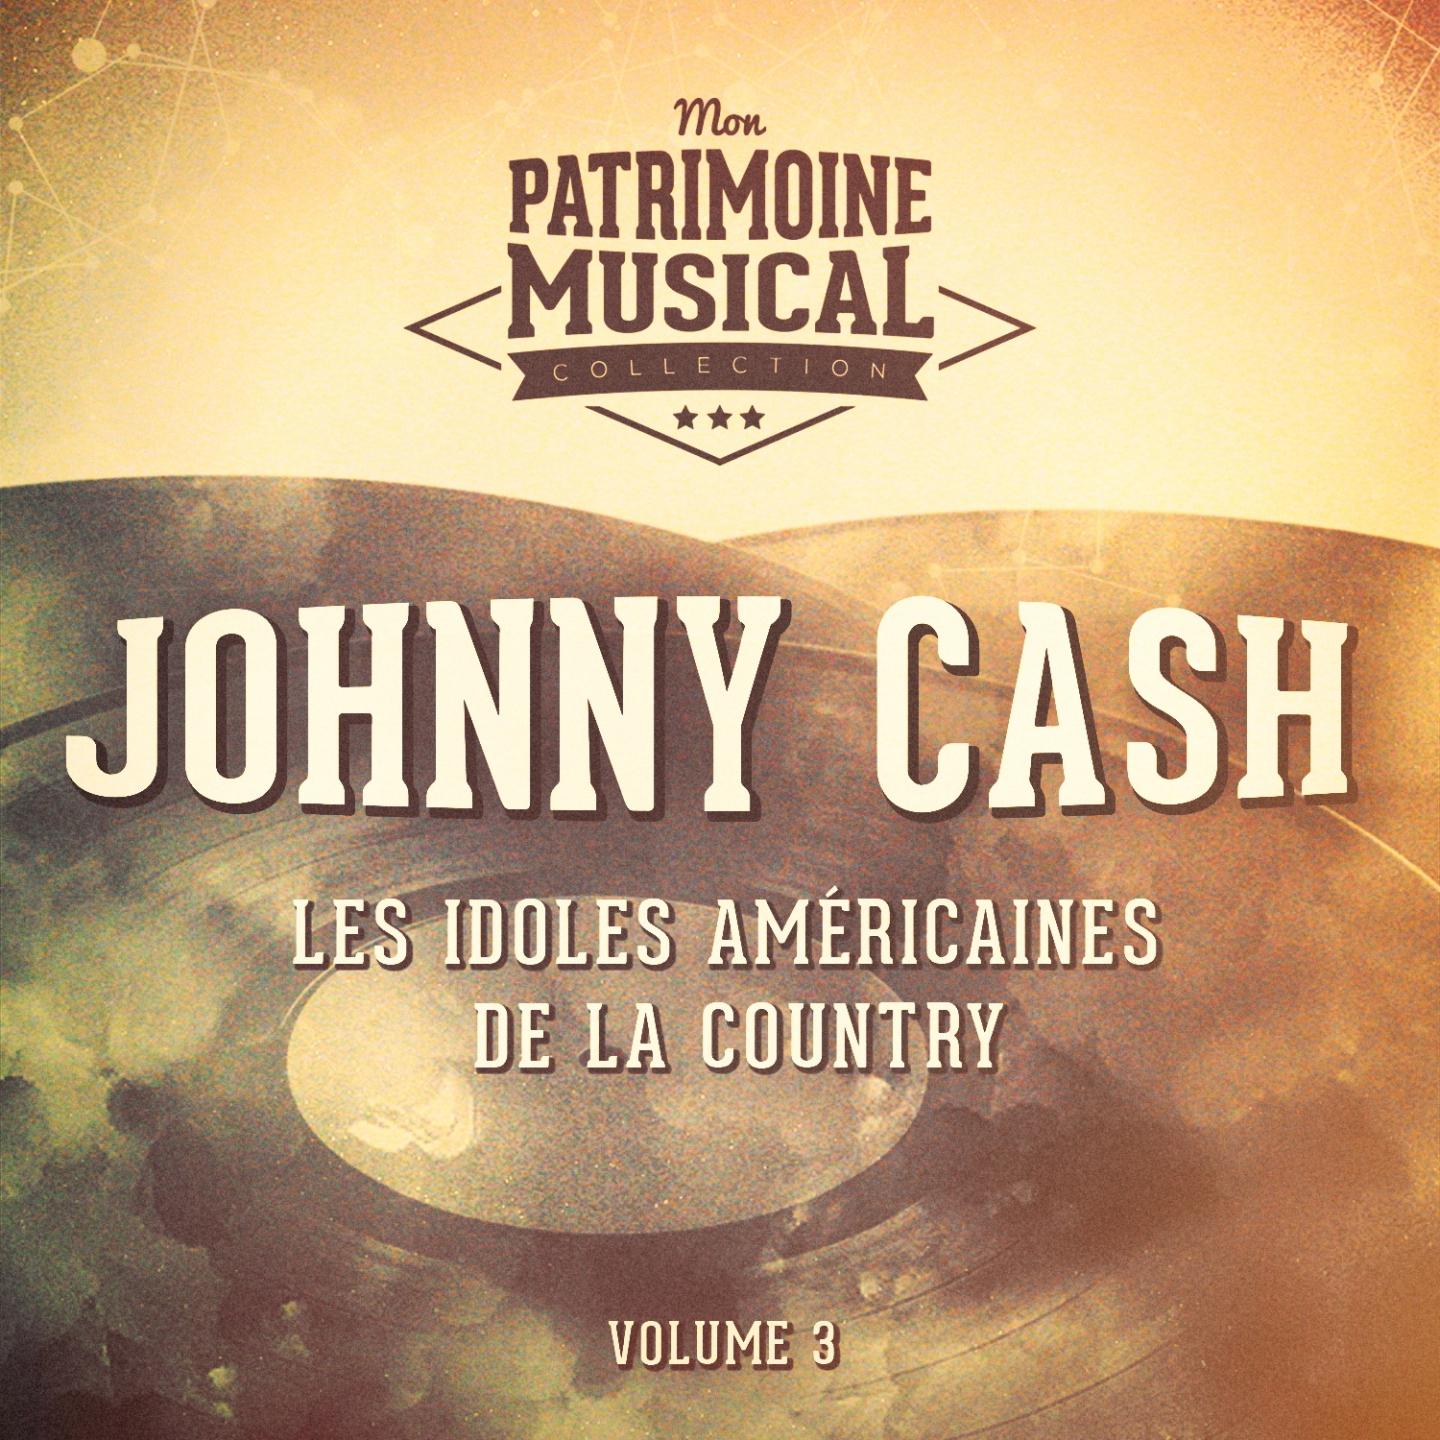 Les idoles ame ricaines de la country : Johnny Cash, Vol. 3